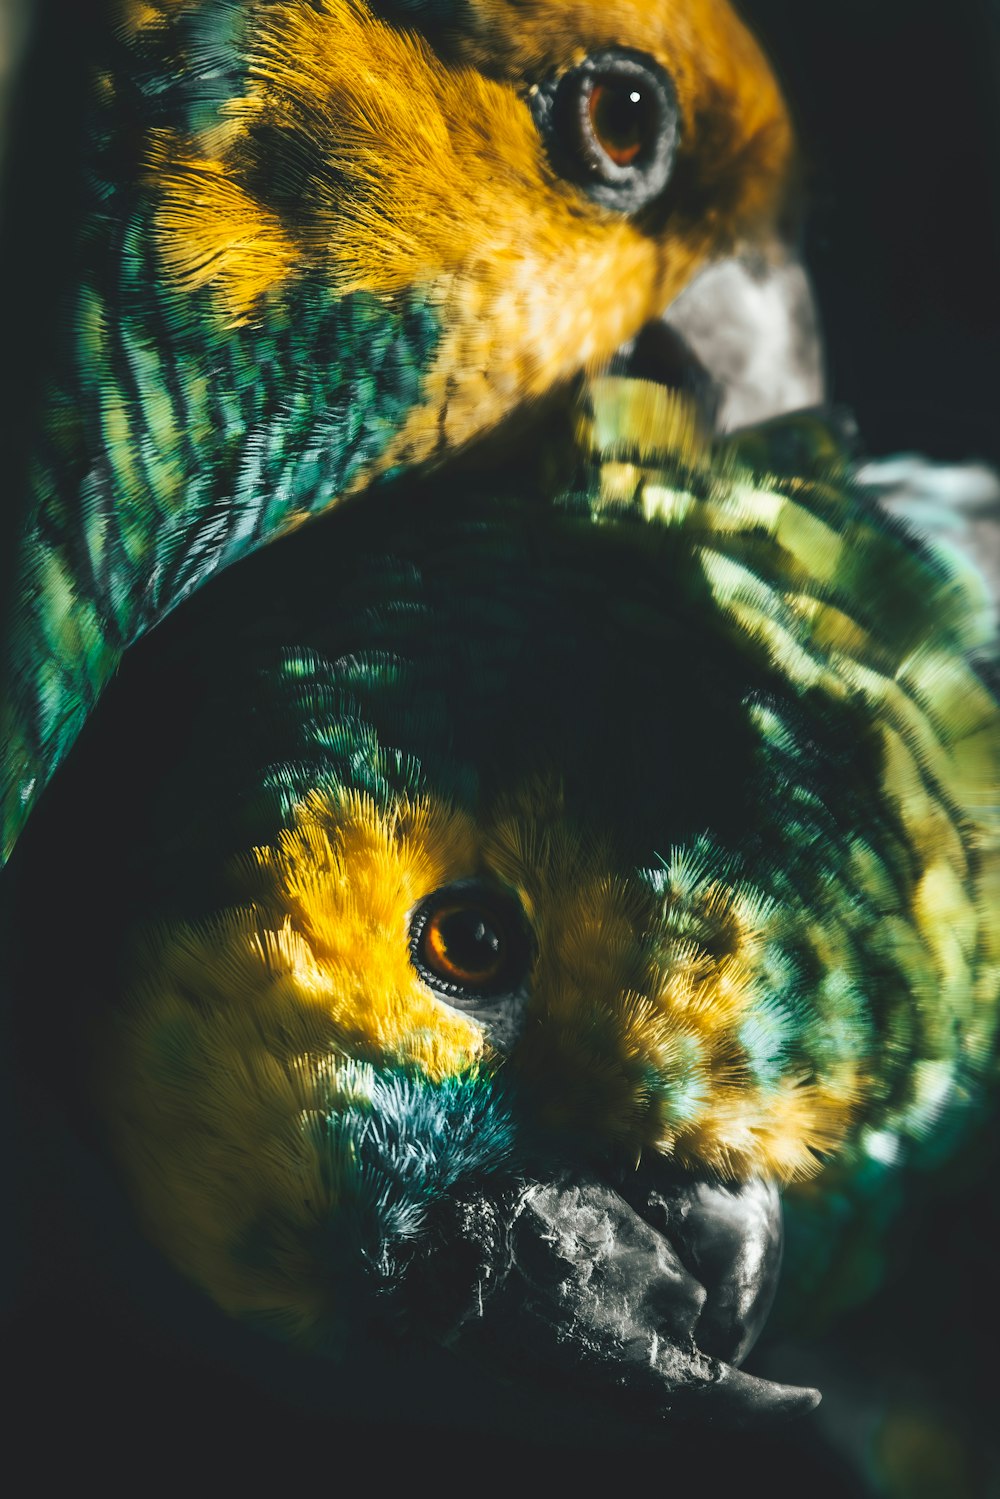 um close up de um pássaro com penas amarelas e verdes